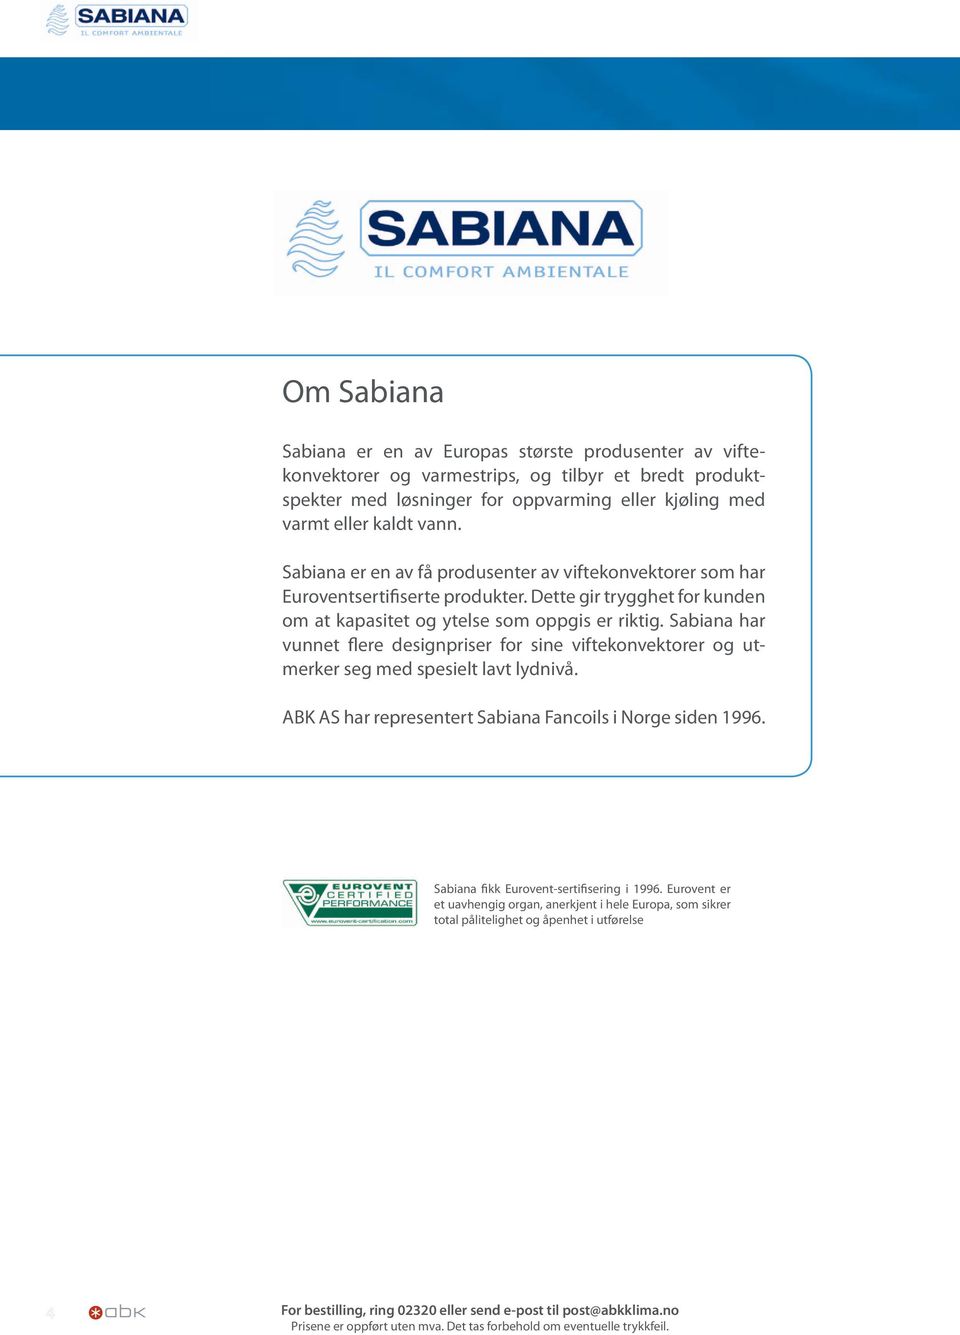 Sabiana har vunnet flere designpriser for sine viftekonvektorer og utmerker seg med spesielt lavt lydnivå. ABK AS har representert Sabiana Fancoils i Norge siden 1996.